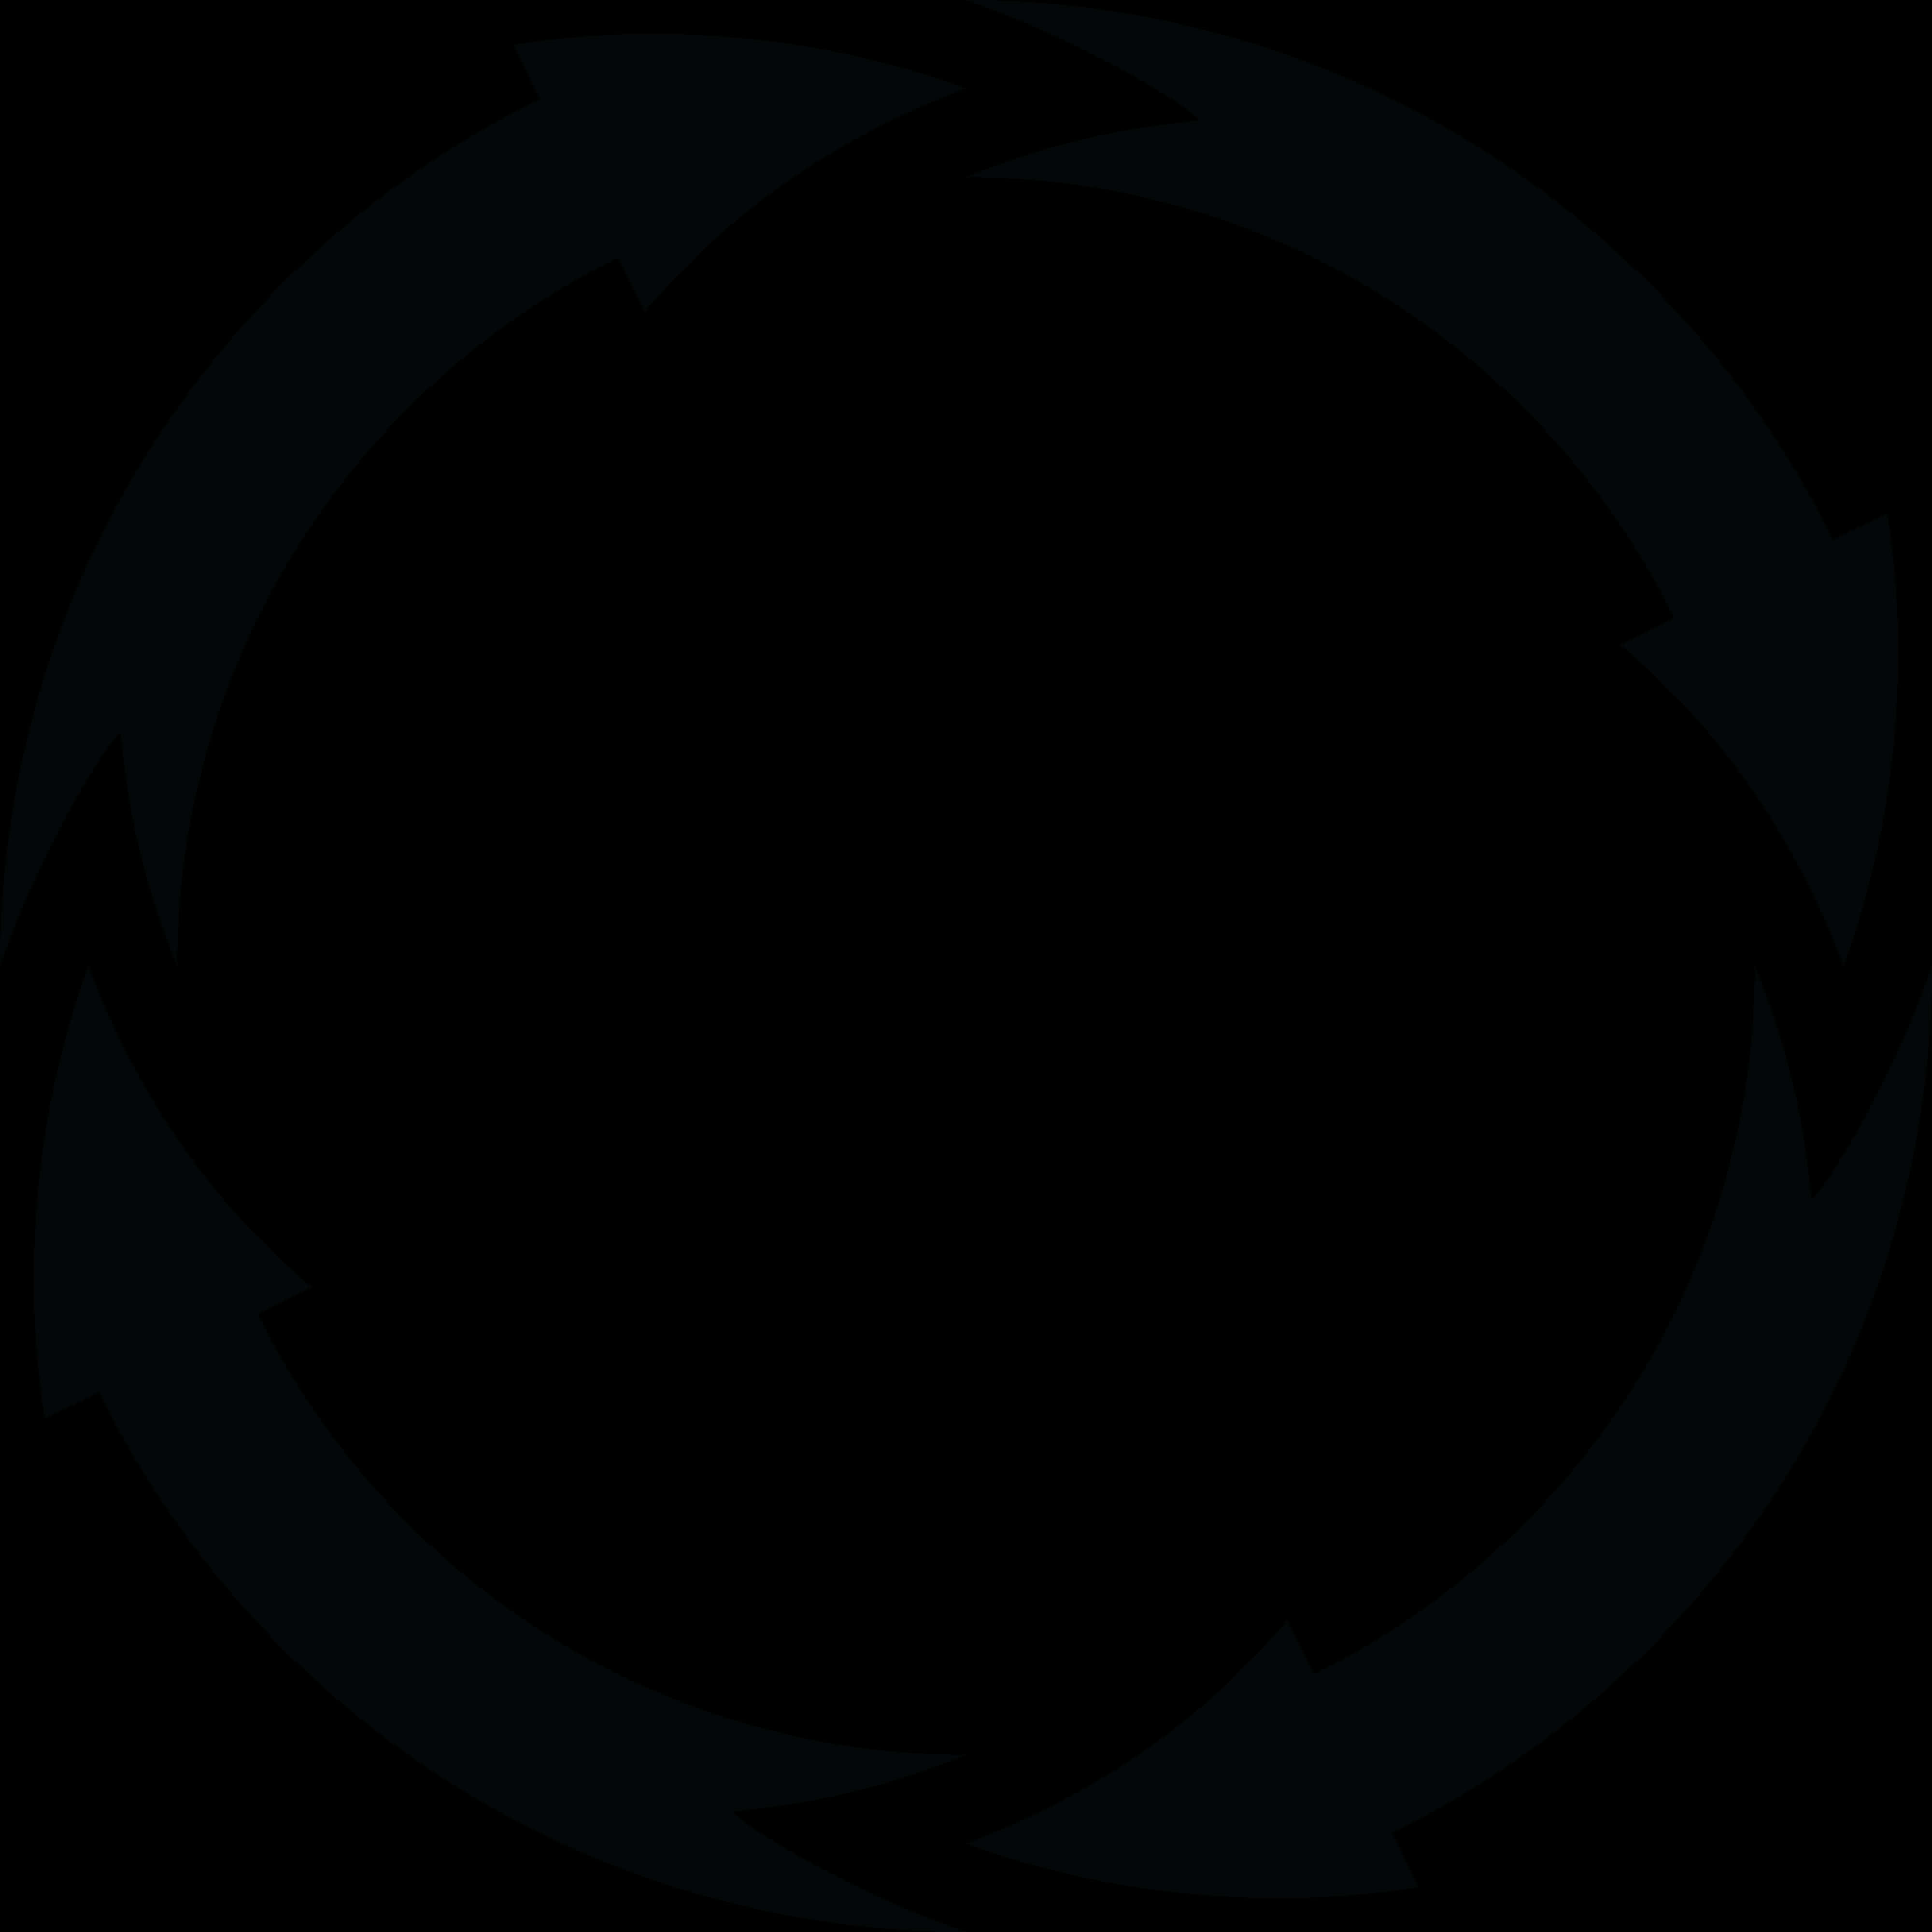 A Circular Black Circle With Arrows